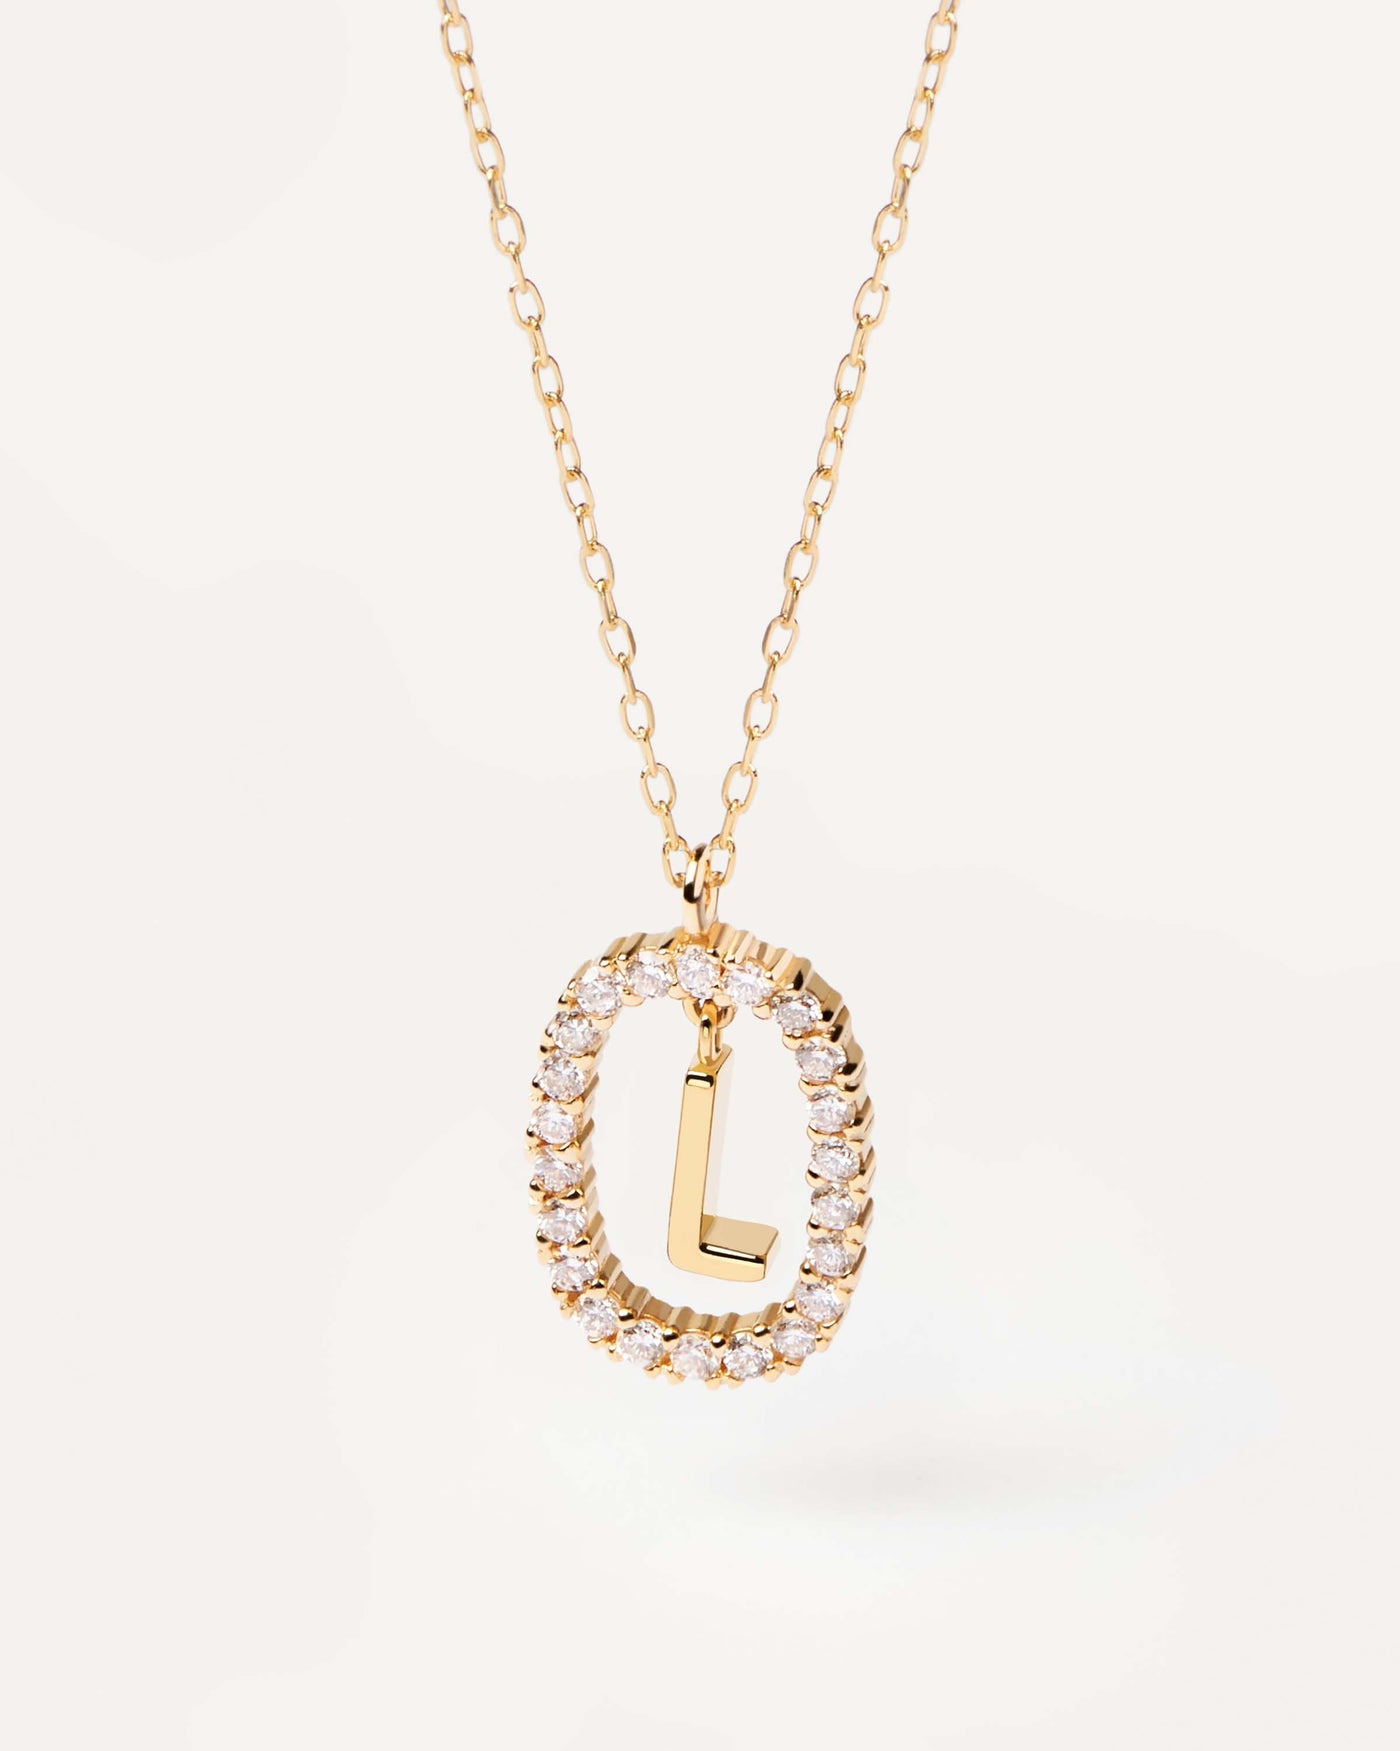 GoldHalskette mit Diamanten Buchstabe L. Erstes L-Halskette in soliden Gelbgold, umkreist von 0,33 Karat-Labor-Diamanten. Erhalten Sie die neuesten Produkte von PDPAOLA. Geben Sie Ihre Bestellung sicher auf und erhalten Sie diesen Bestseller.